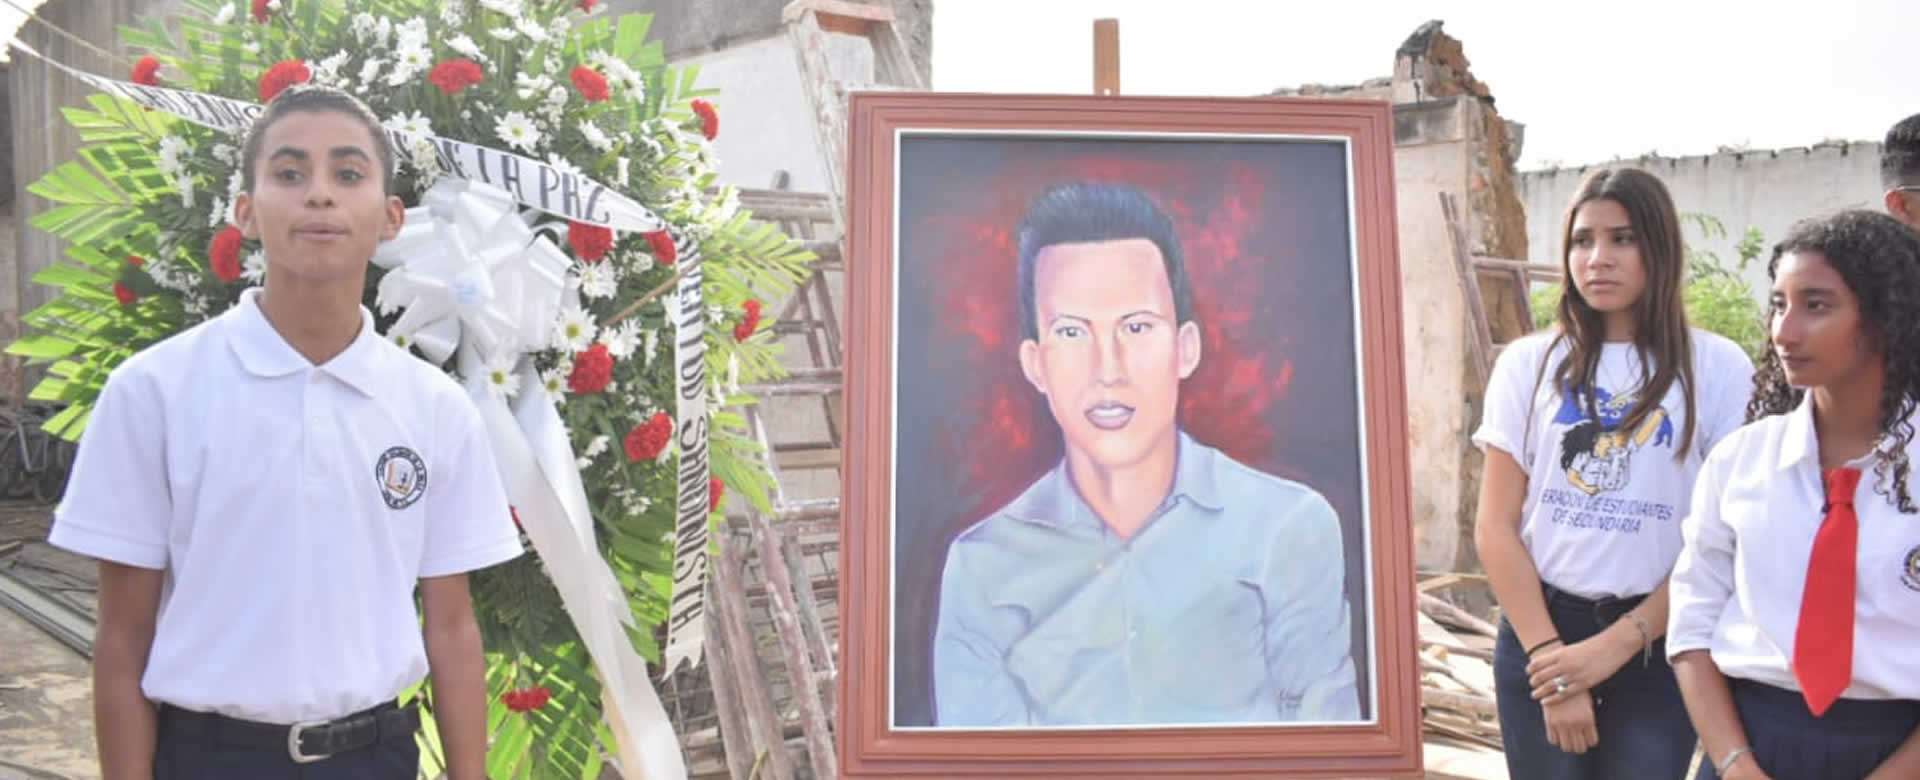 Estudiantes de secundaria realizan homenaje a héroes caídos en el conflicto golpista